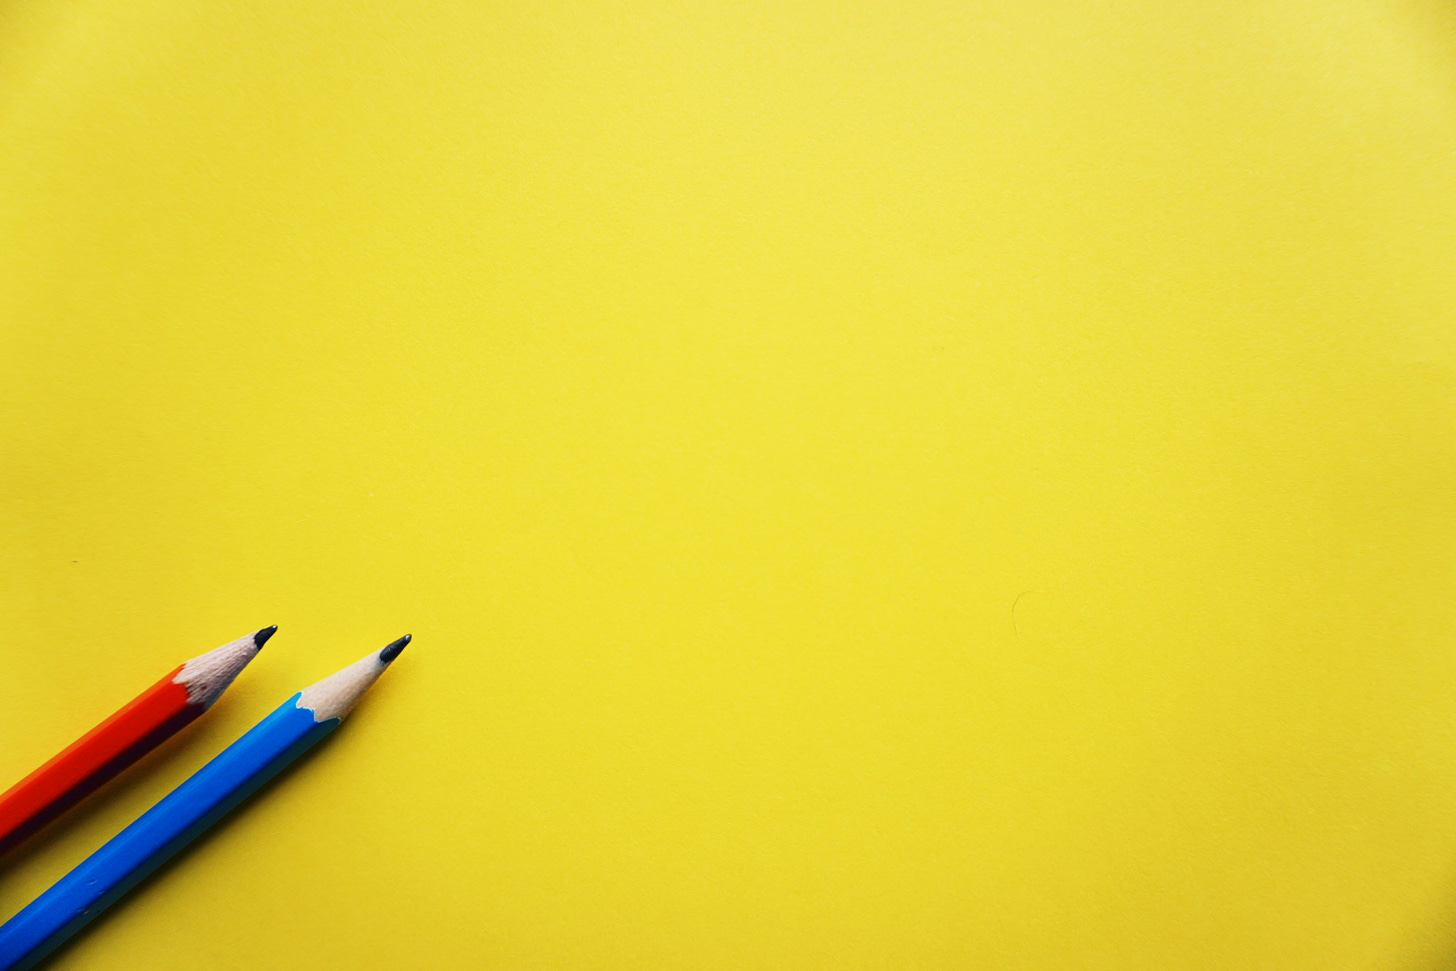 Sfondo uniforme giallo. Dall'angolo in basso a sinistra spuntano in posizione obliqua due matite, una rossa e una azzurra.